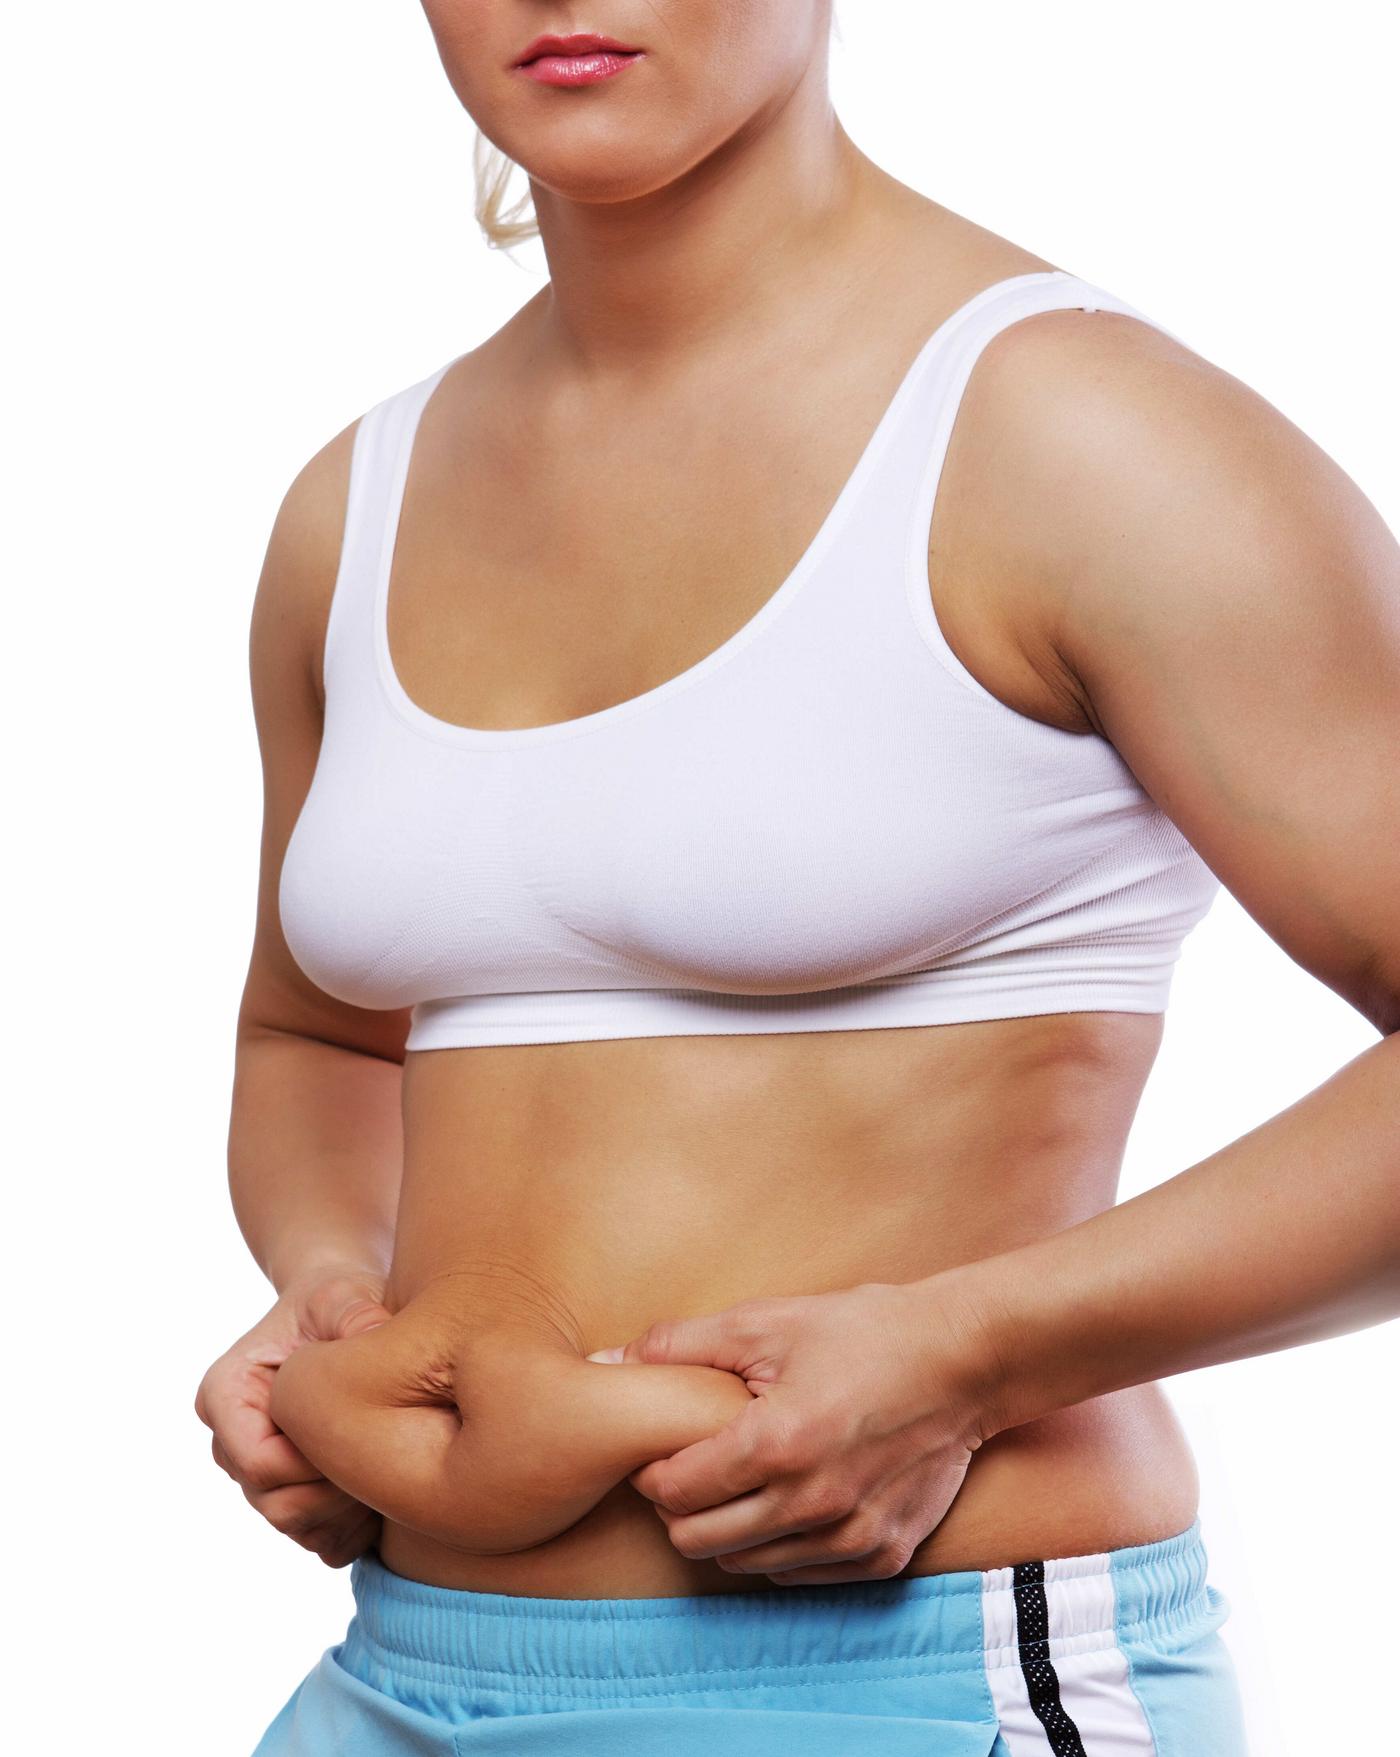 Perdre du ventre: nos conseils efficaces